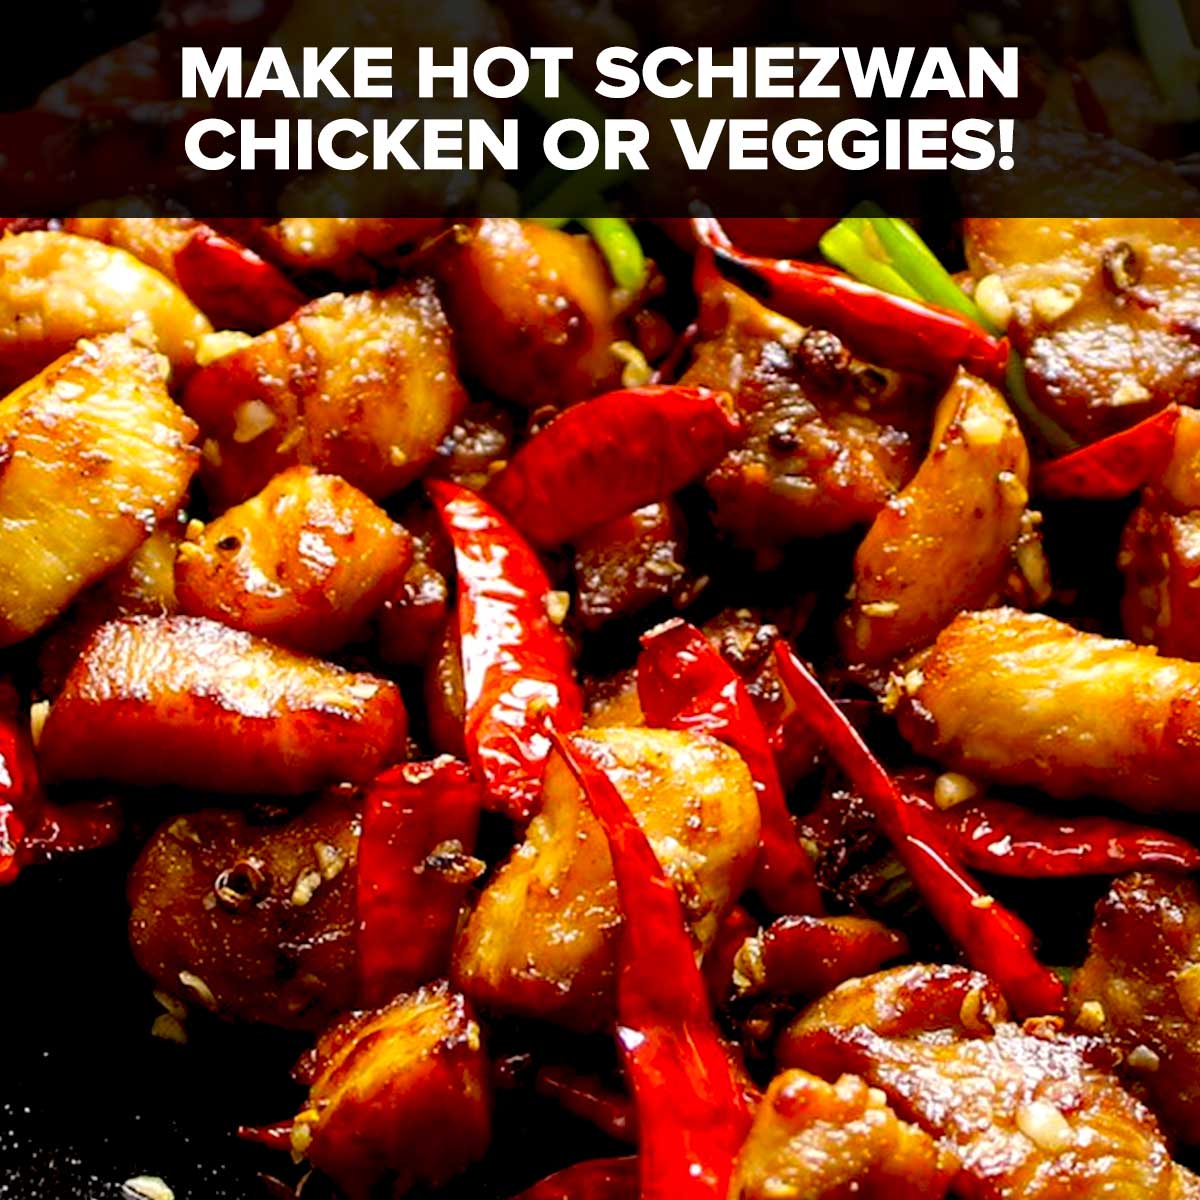 Spicy Schezwan Sauce 110ml x 2 Pack